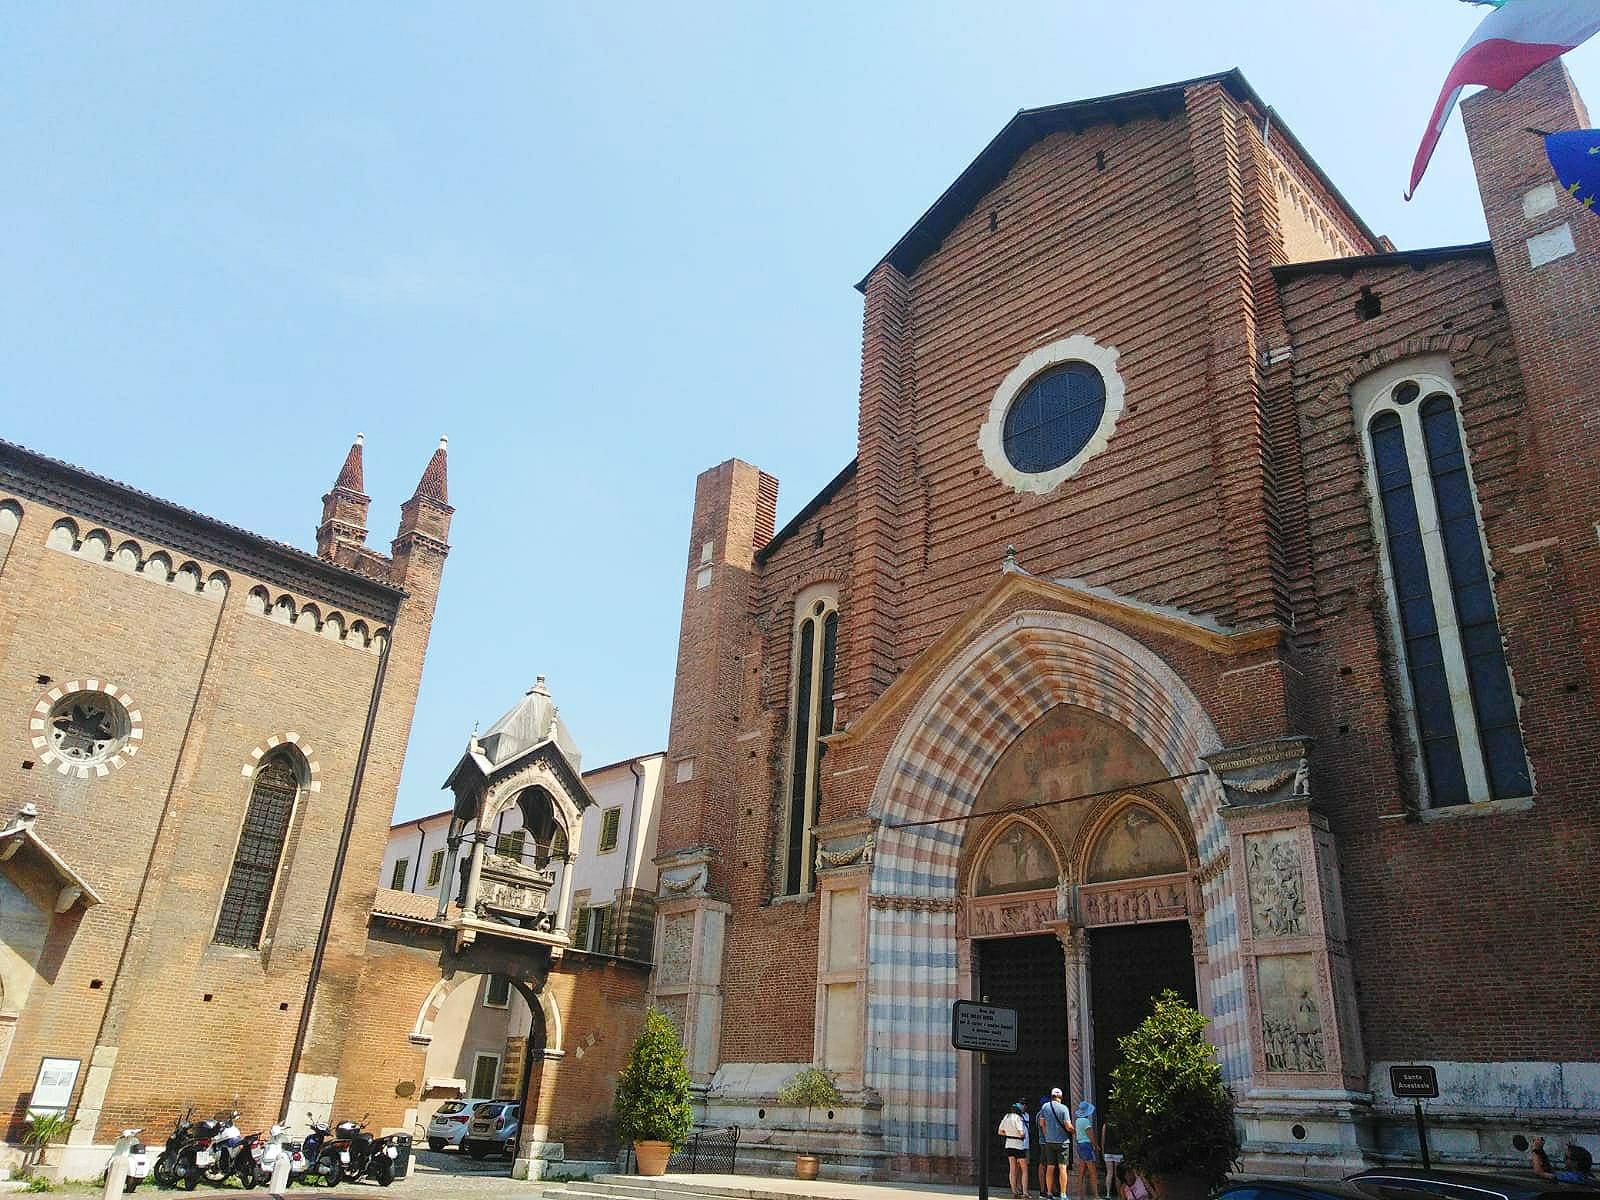 Santa Maria Antica